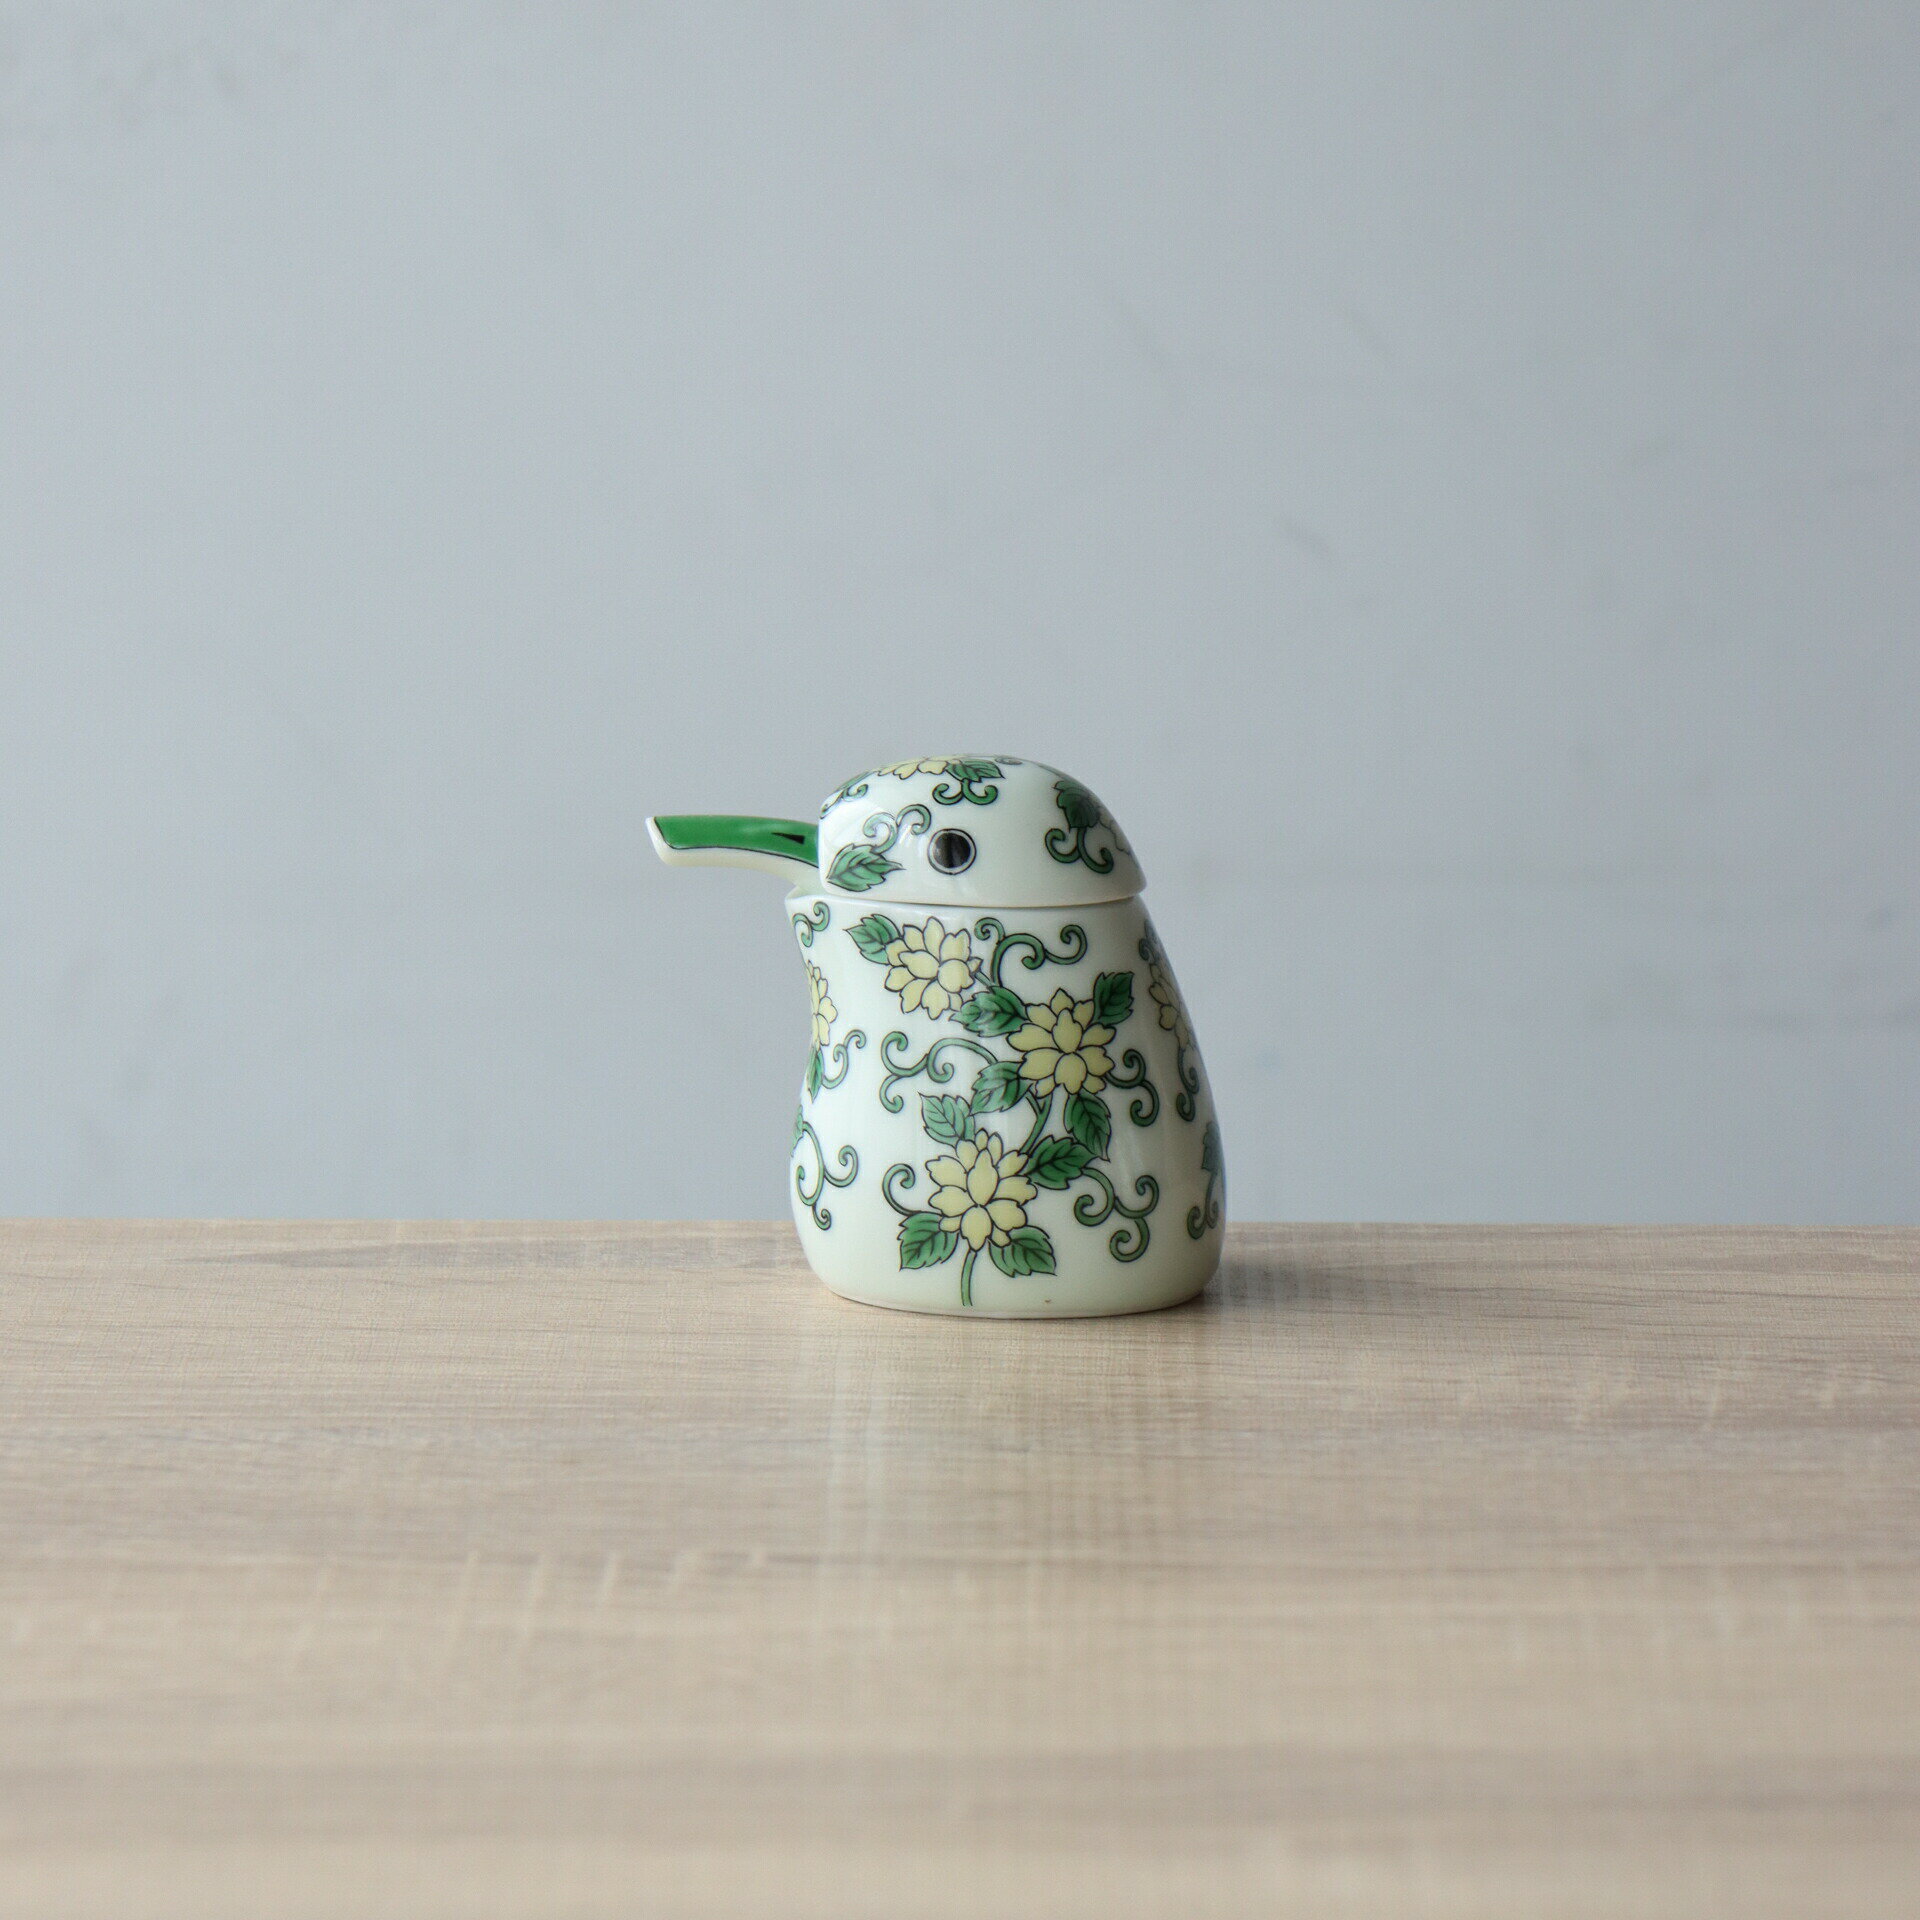 有田焼 カワセミ 緑 醤油さし(小) 液だれしない 陶磁器 かわいい ギフト 母の日 食卓雑貨